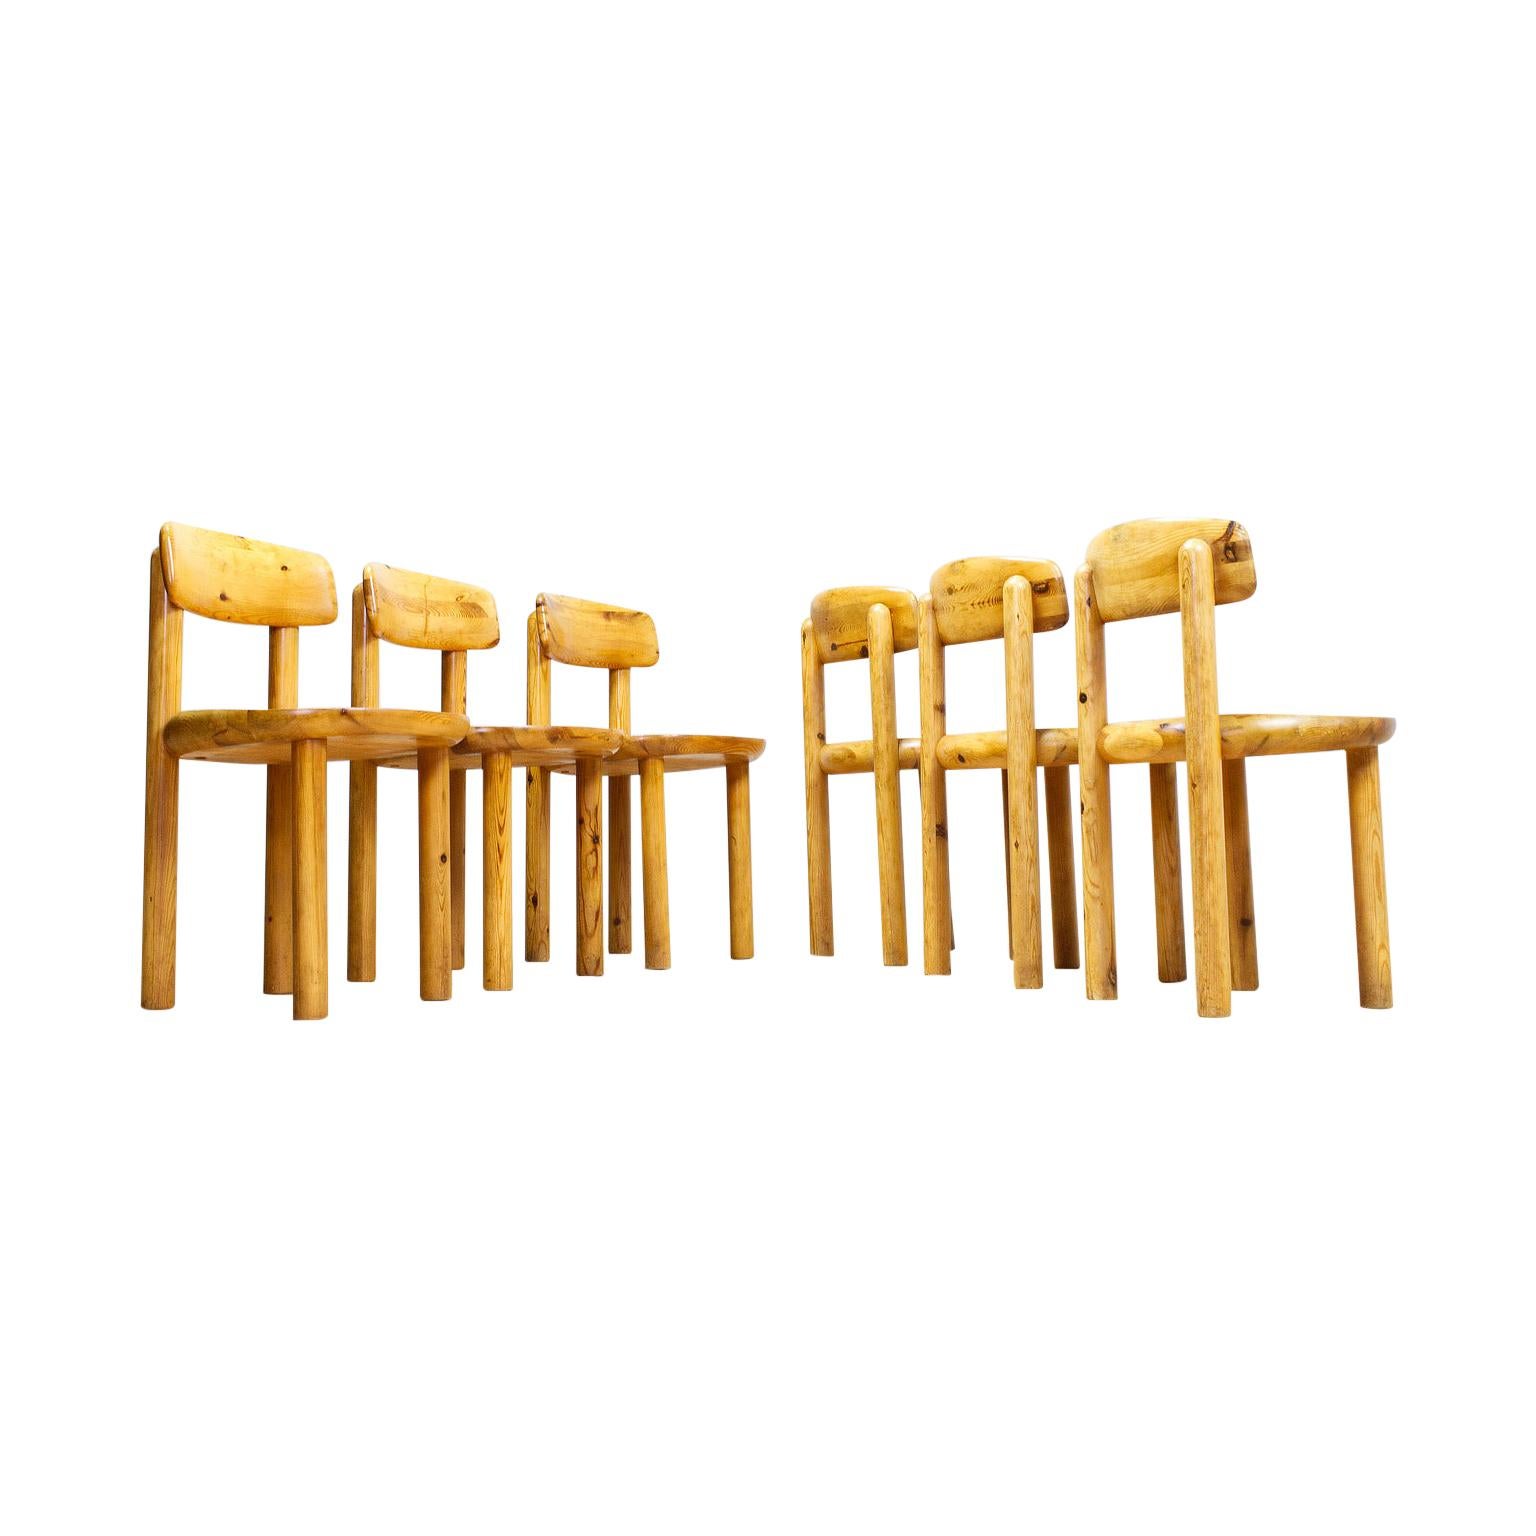 Set of Six Pine Wooden Chairs by Rainer Daumiller for Hirtshals Savvaerk, 1970s